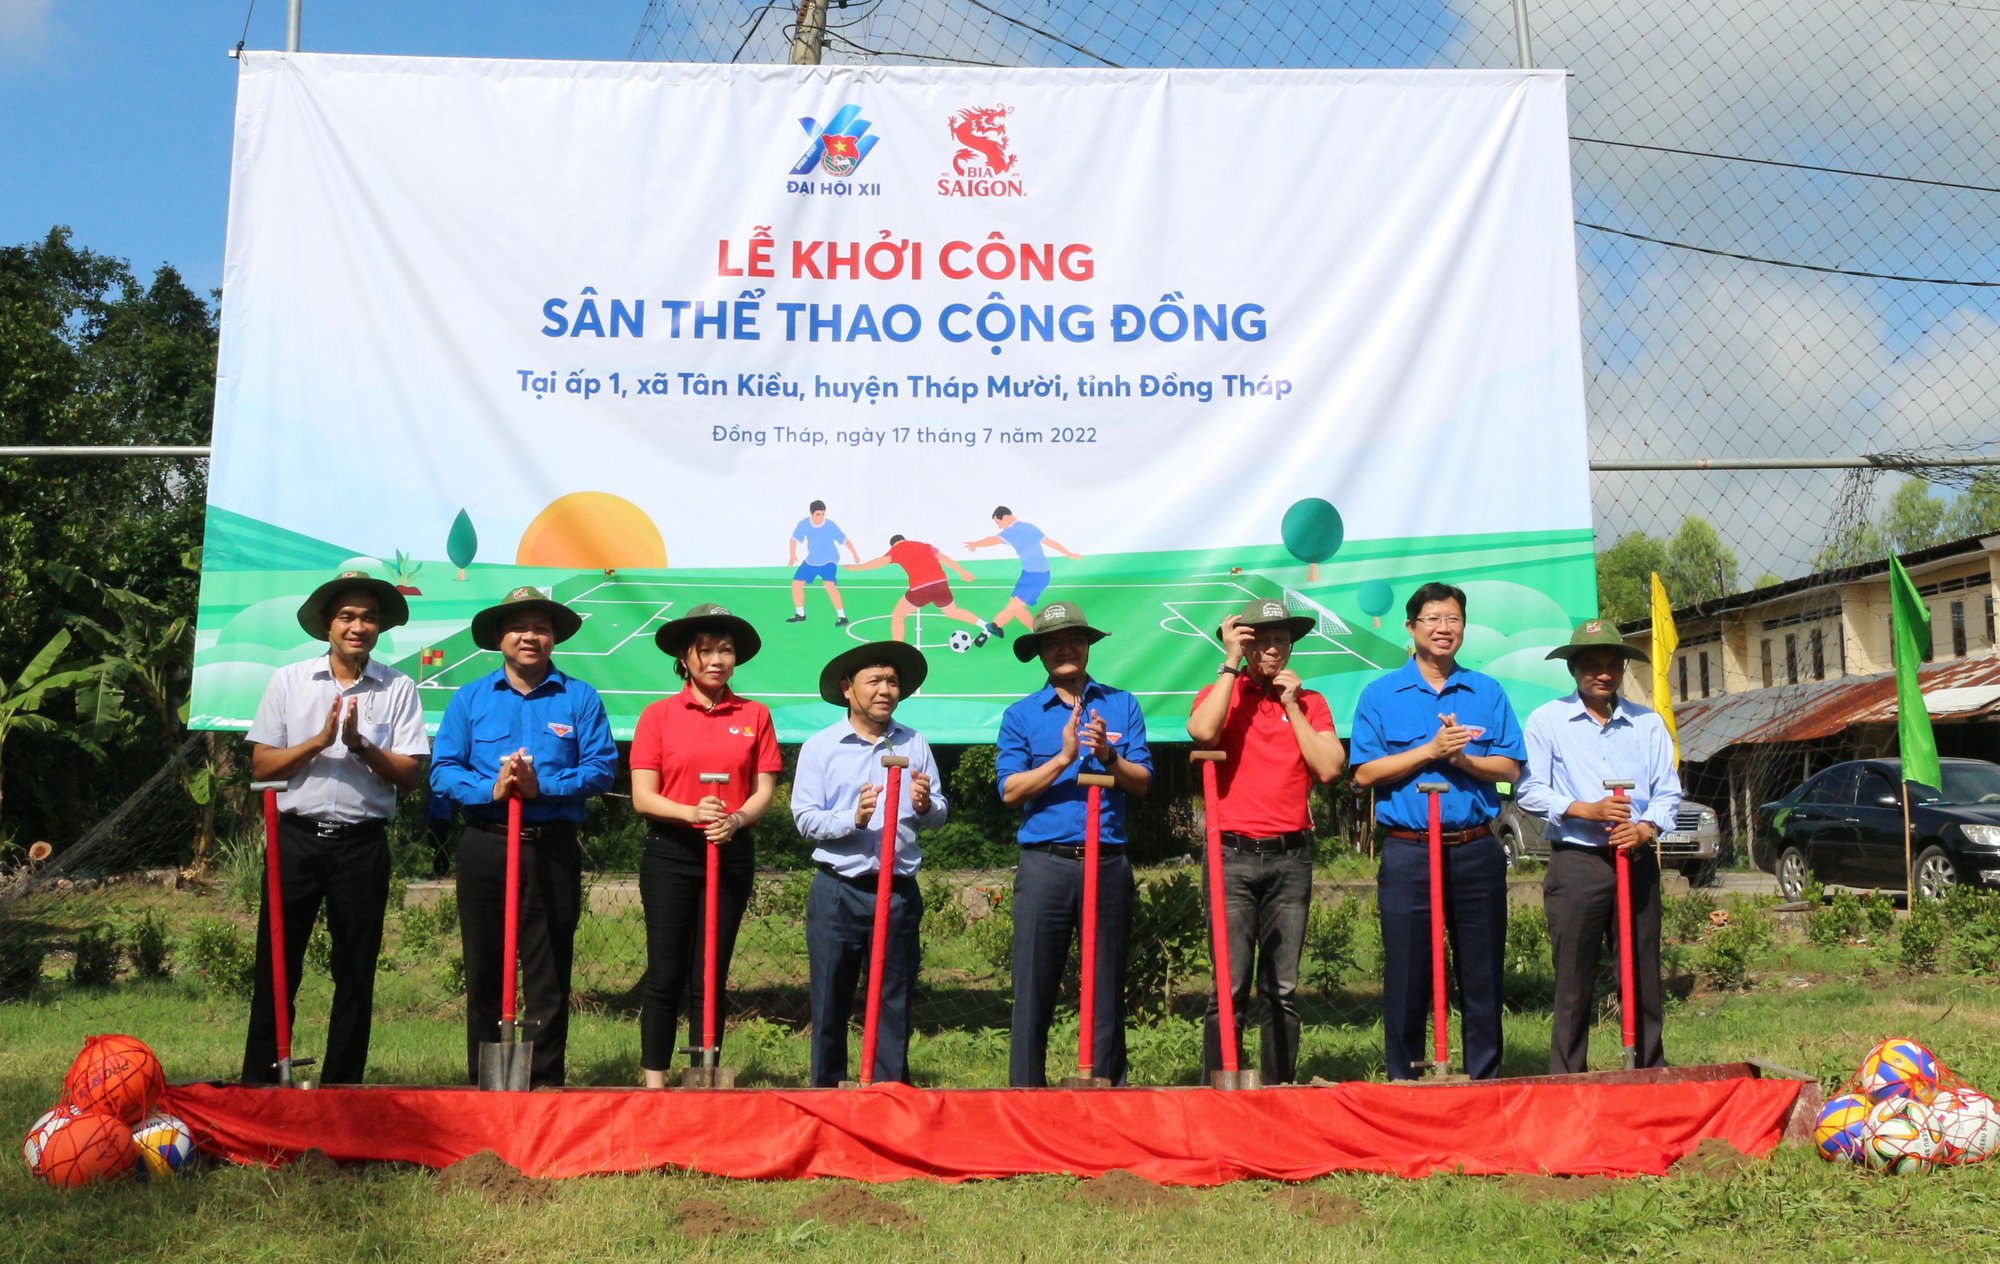 Thanh niên 3 tỉnh Tuyên Quang, Thanh Hóa, Đồng Tháp được hỗ trợ ứng dụng chuyển đổi số  - Ảnh 2.